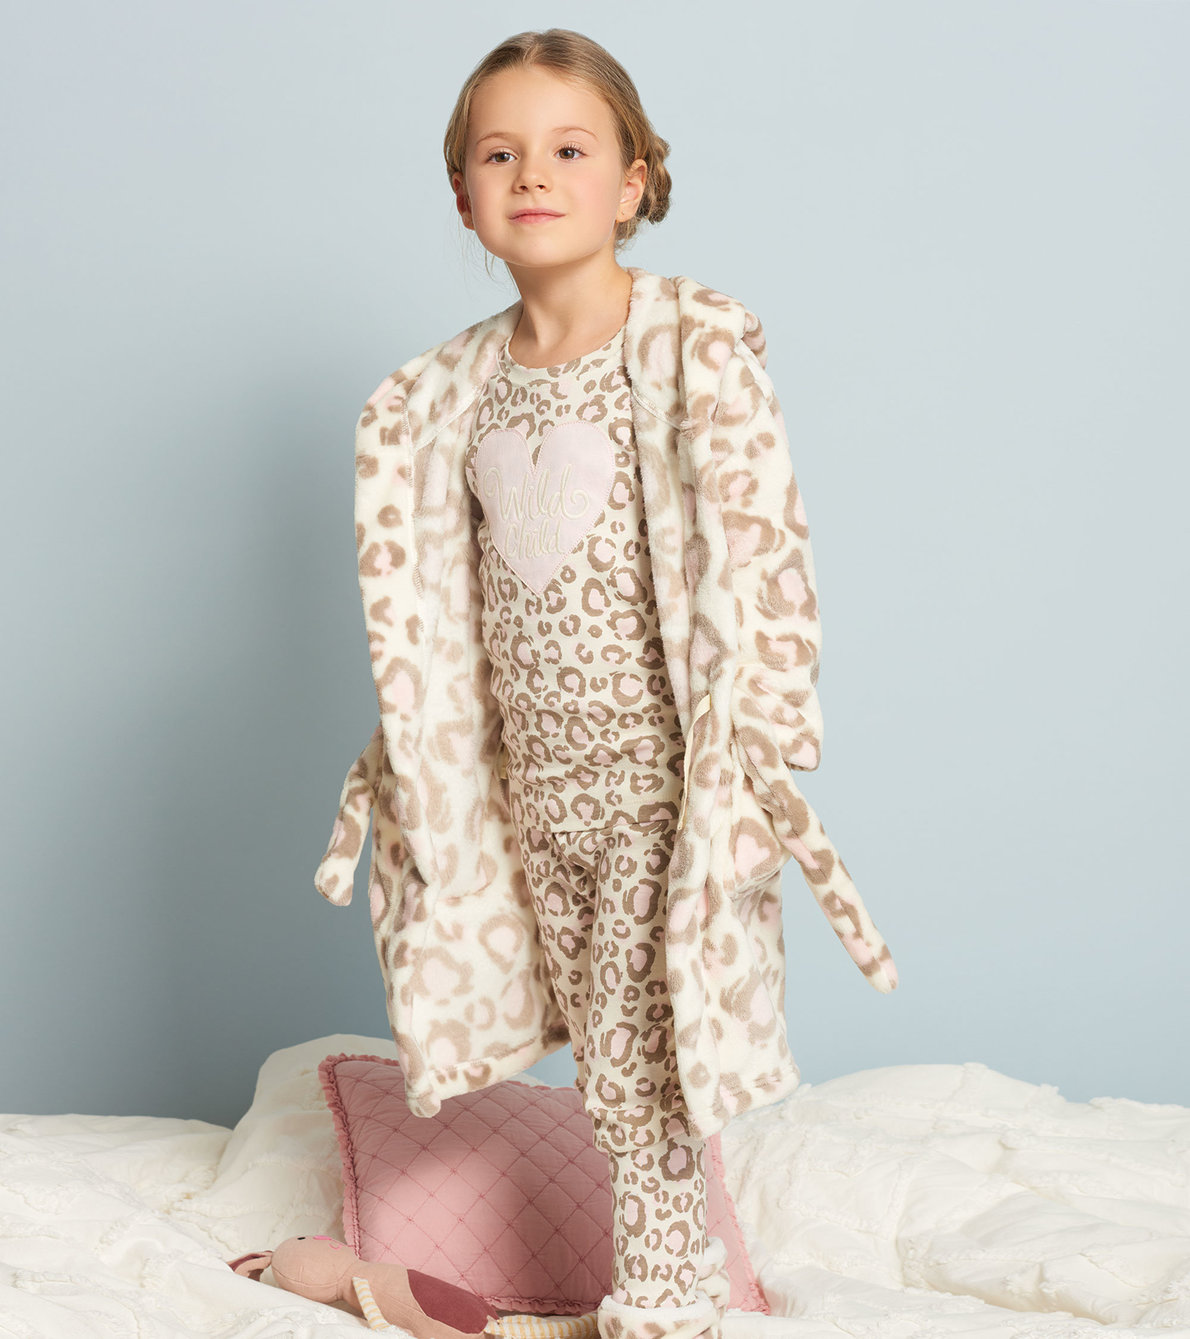 View larger image of Painted Leopard Organic Cotton Raglan Pajama Set